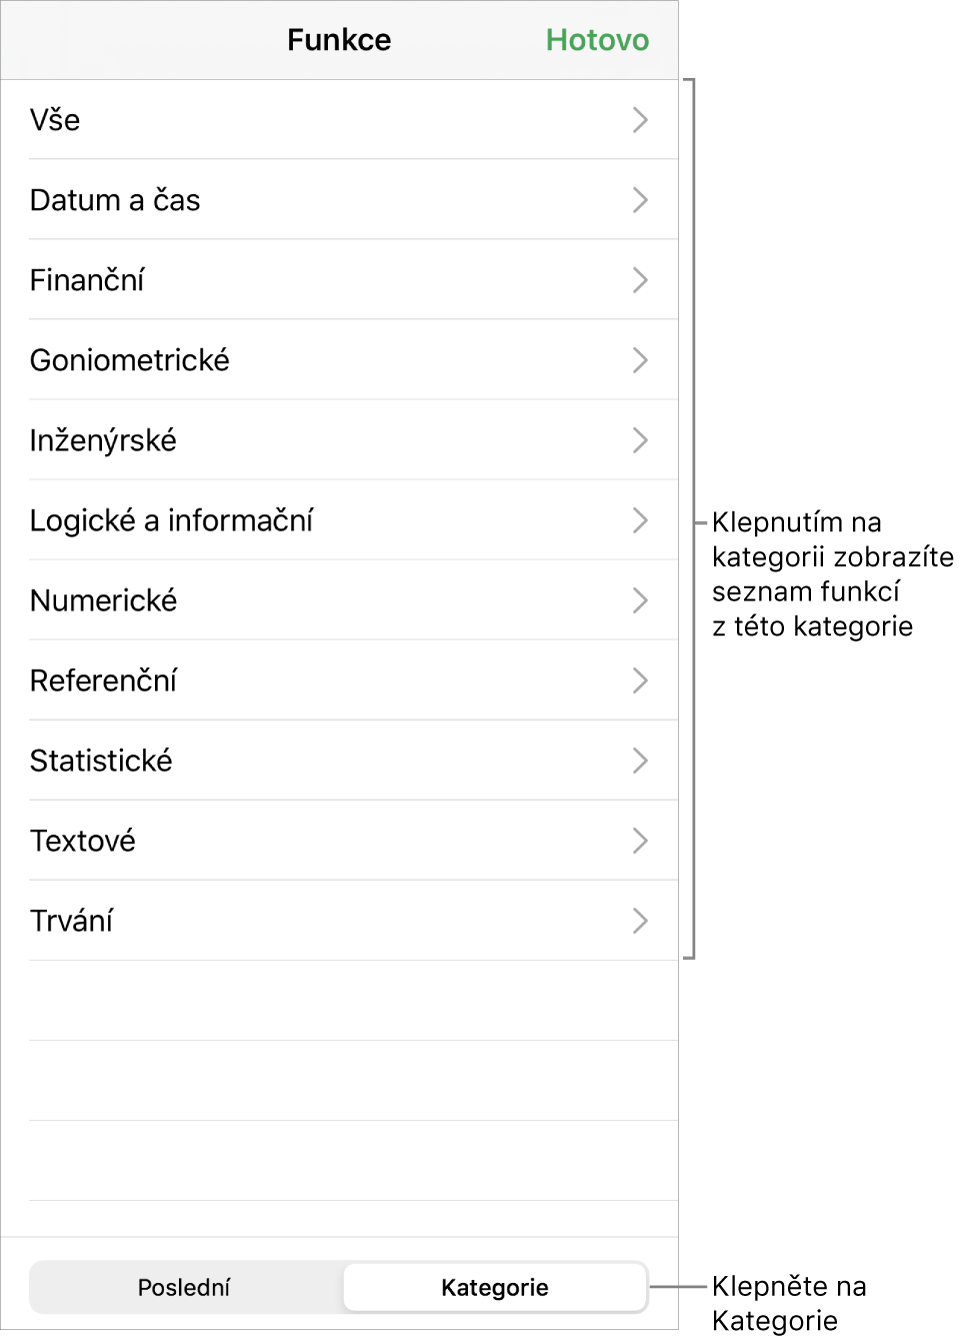 Prohlížeč funkcí s popiskem tlačítka Kategorie a seznamu kategorií